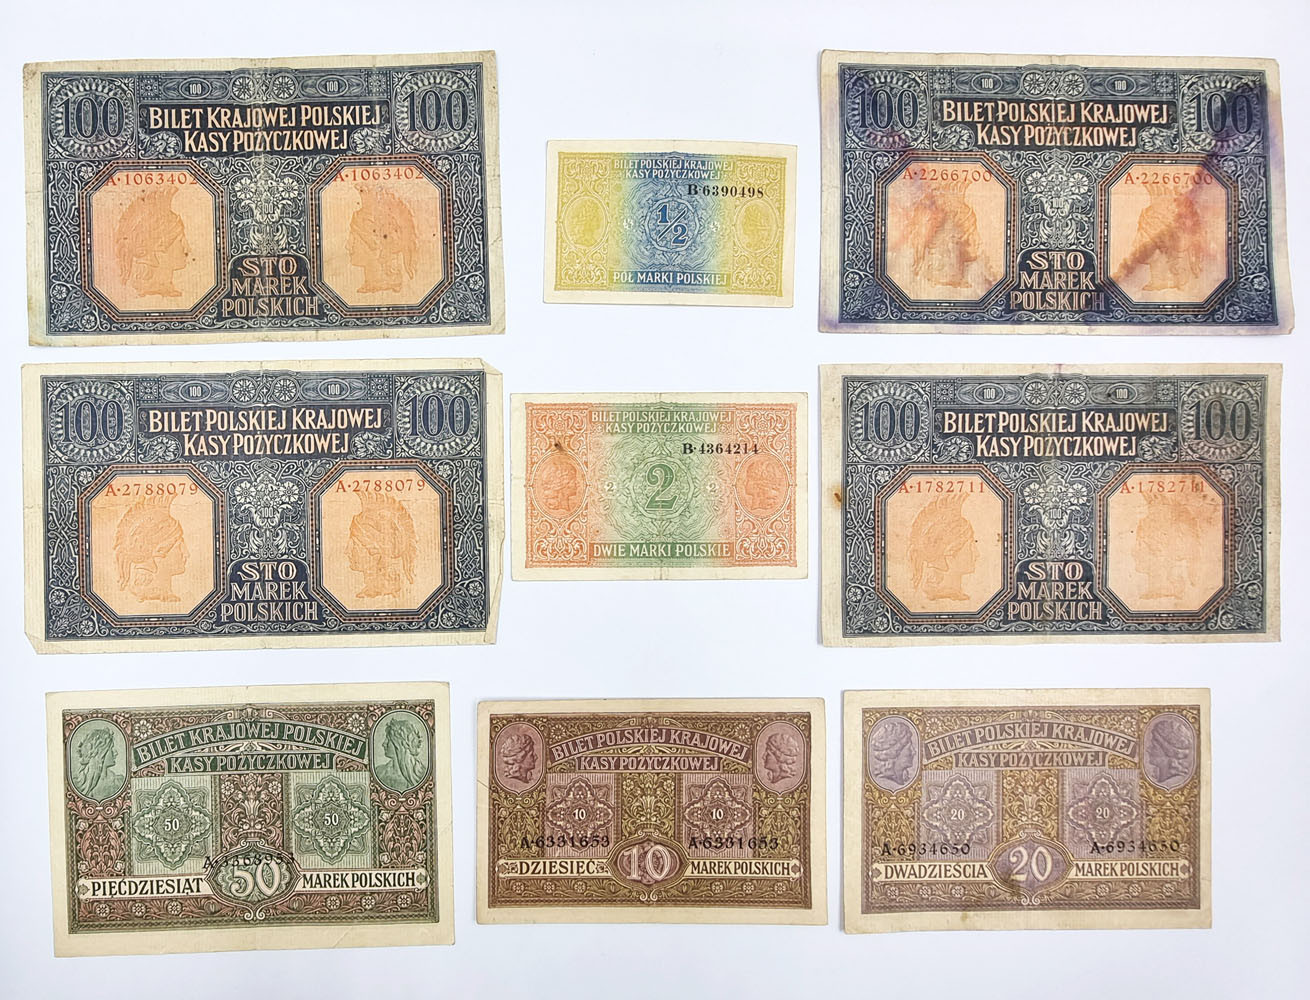 1/2 do 100 marek polskich 1916, zestaw 9 banknotów - RZADKIE